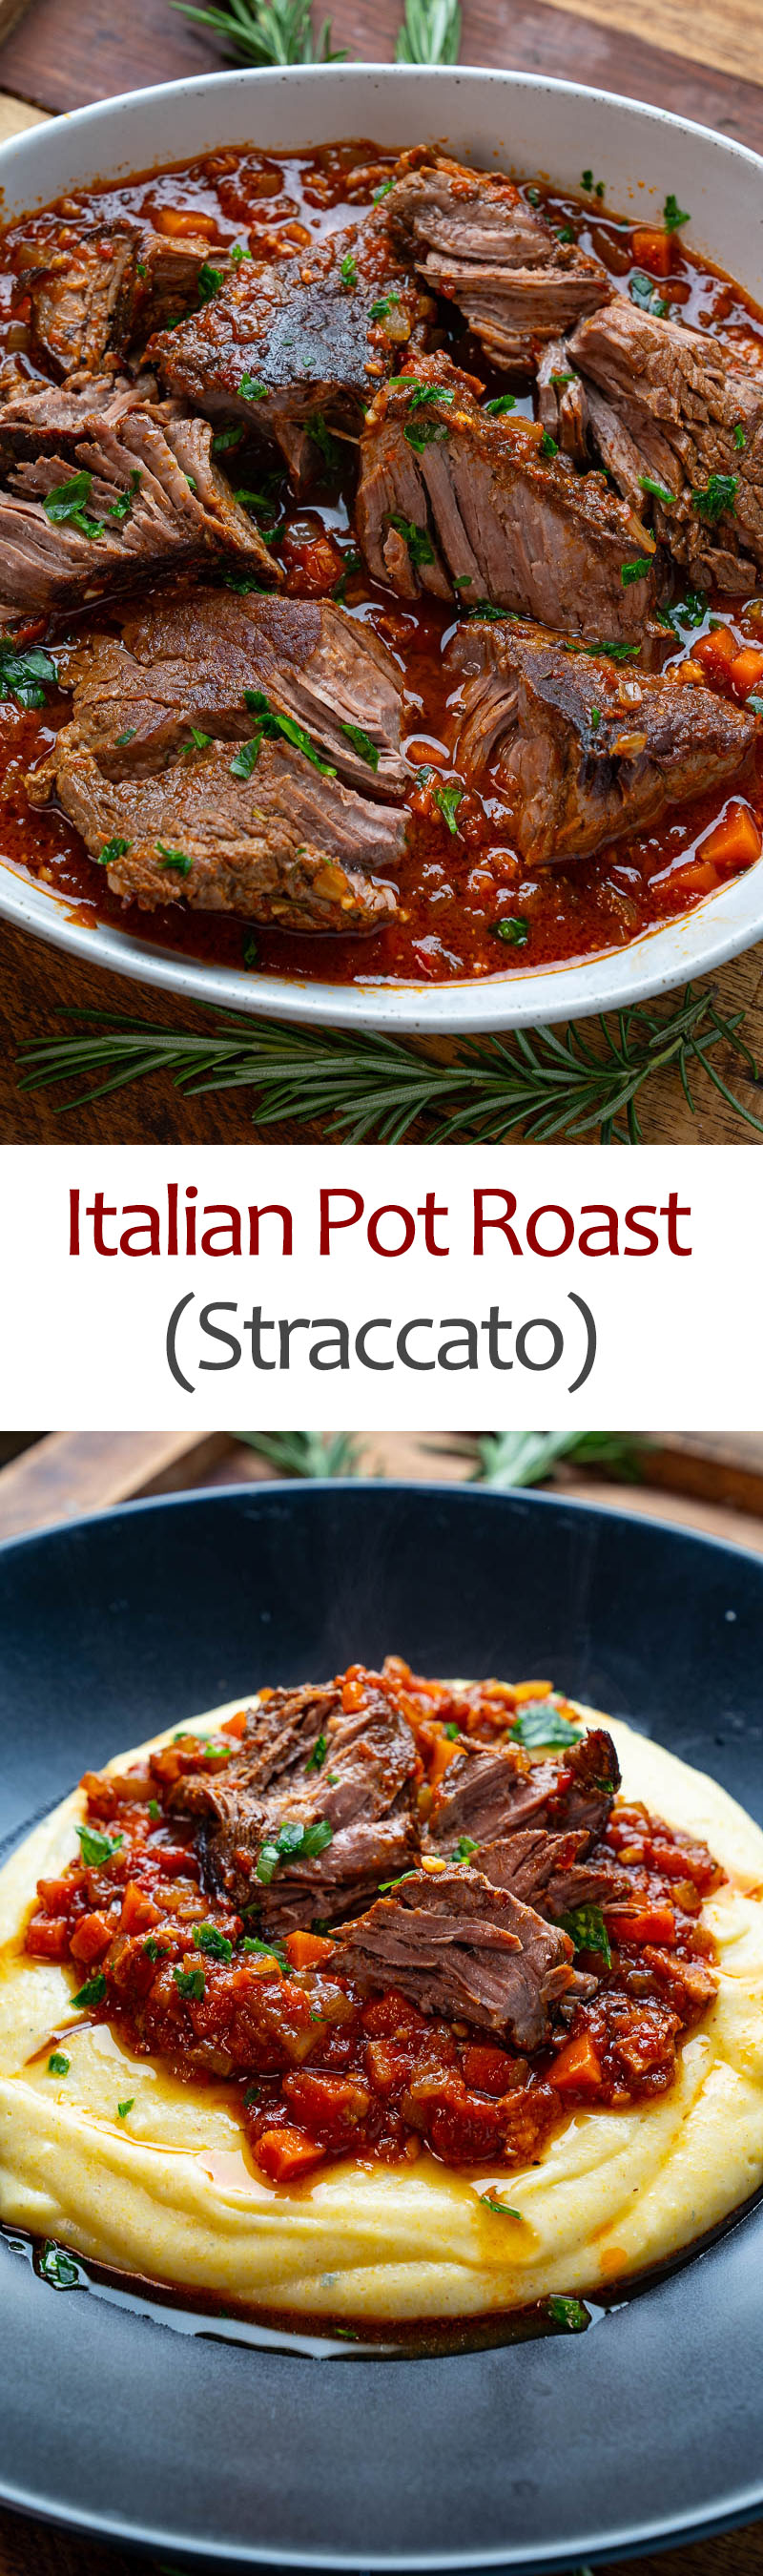 Italian Pot Roast (Straccato)